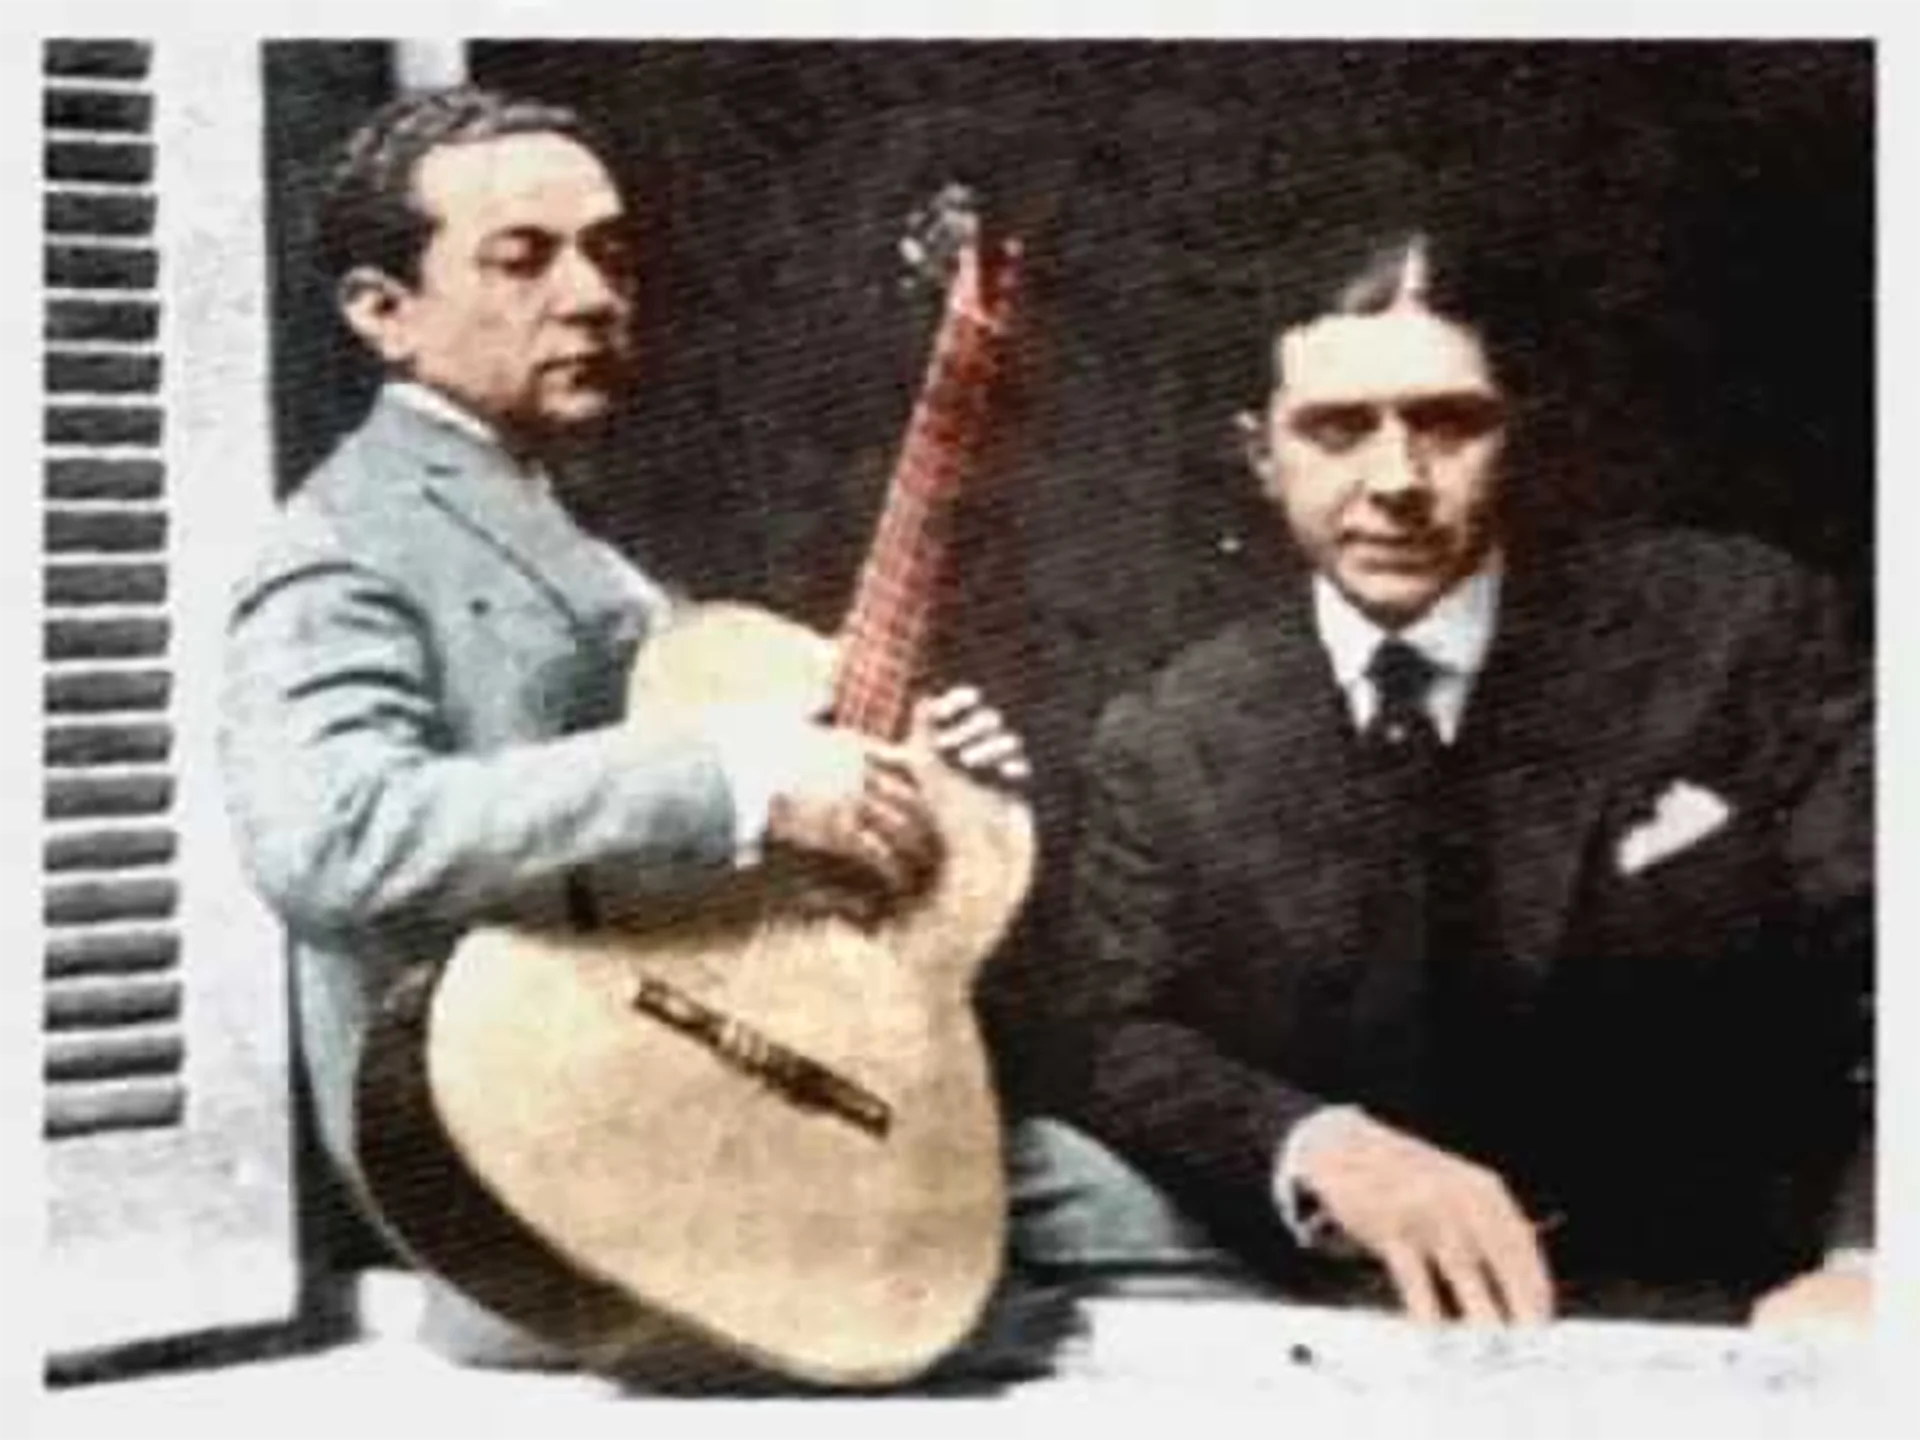 Gardel – Razzano. “La historia del tango no es concebible sin la presencia de Carlos Gardel”.